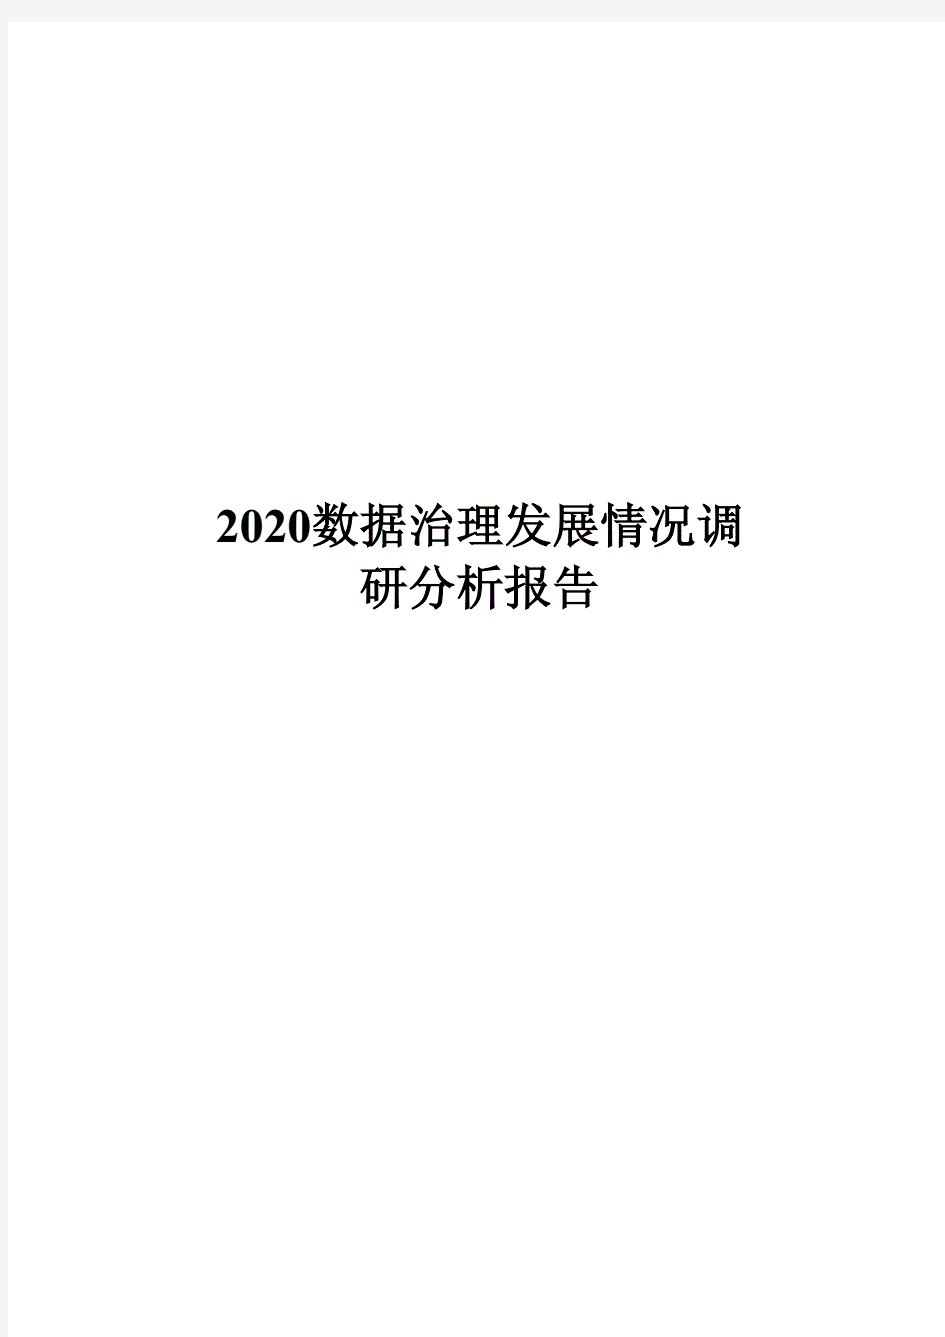 2020数据治理发展情况调研分析报告.